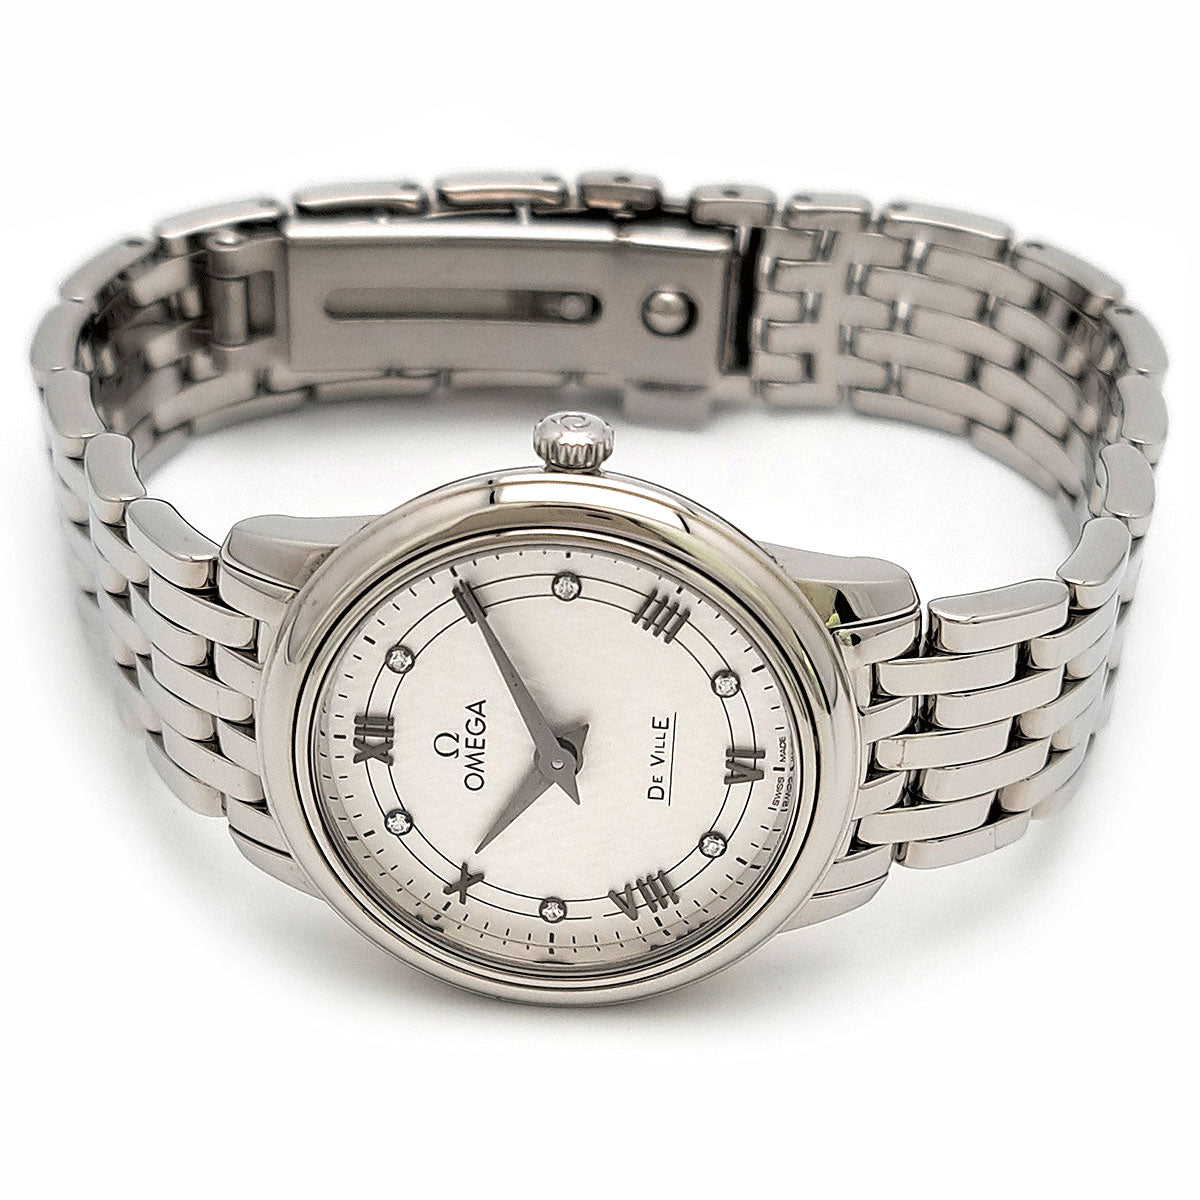 Quartz De Ville Prestige Wrist Watch 424.10.27.60.52.002